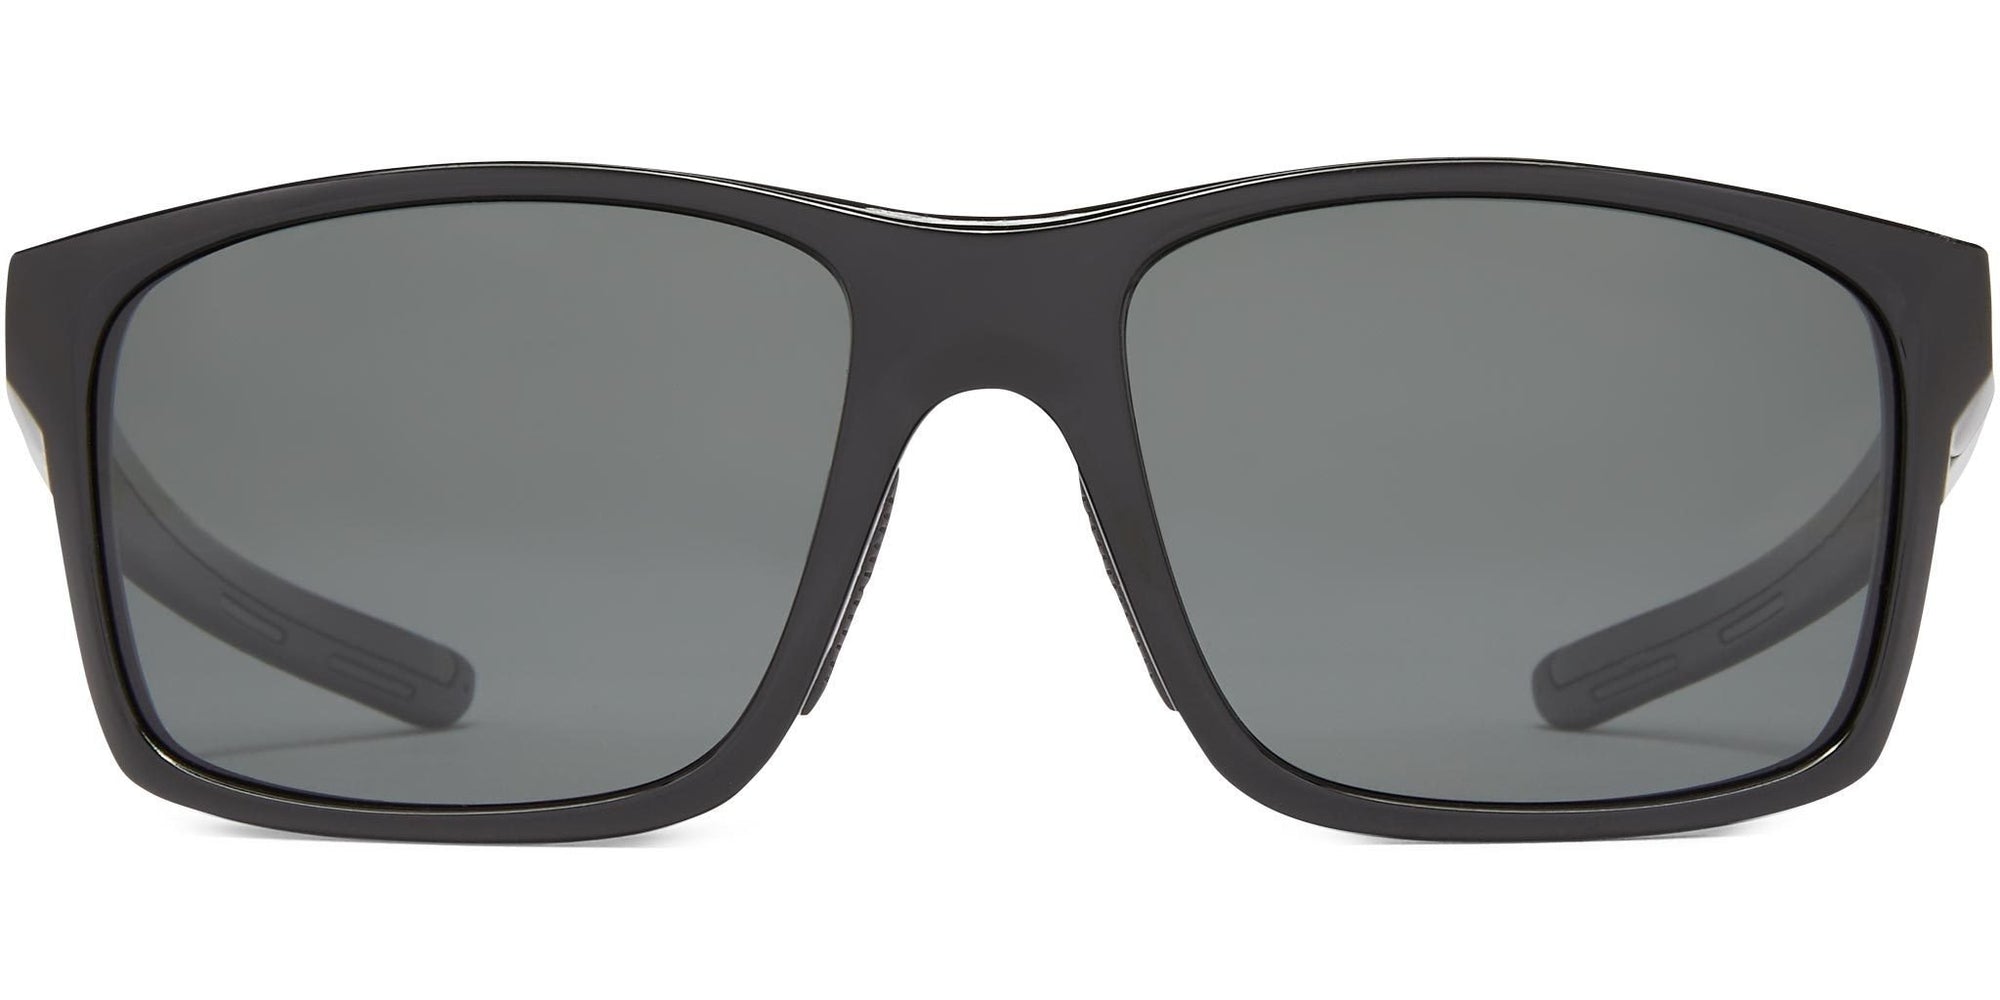 Pargo - Shiny Black/Gray Lens - Polarized Sunglasses